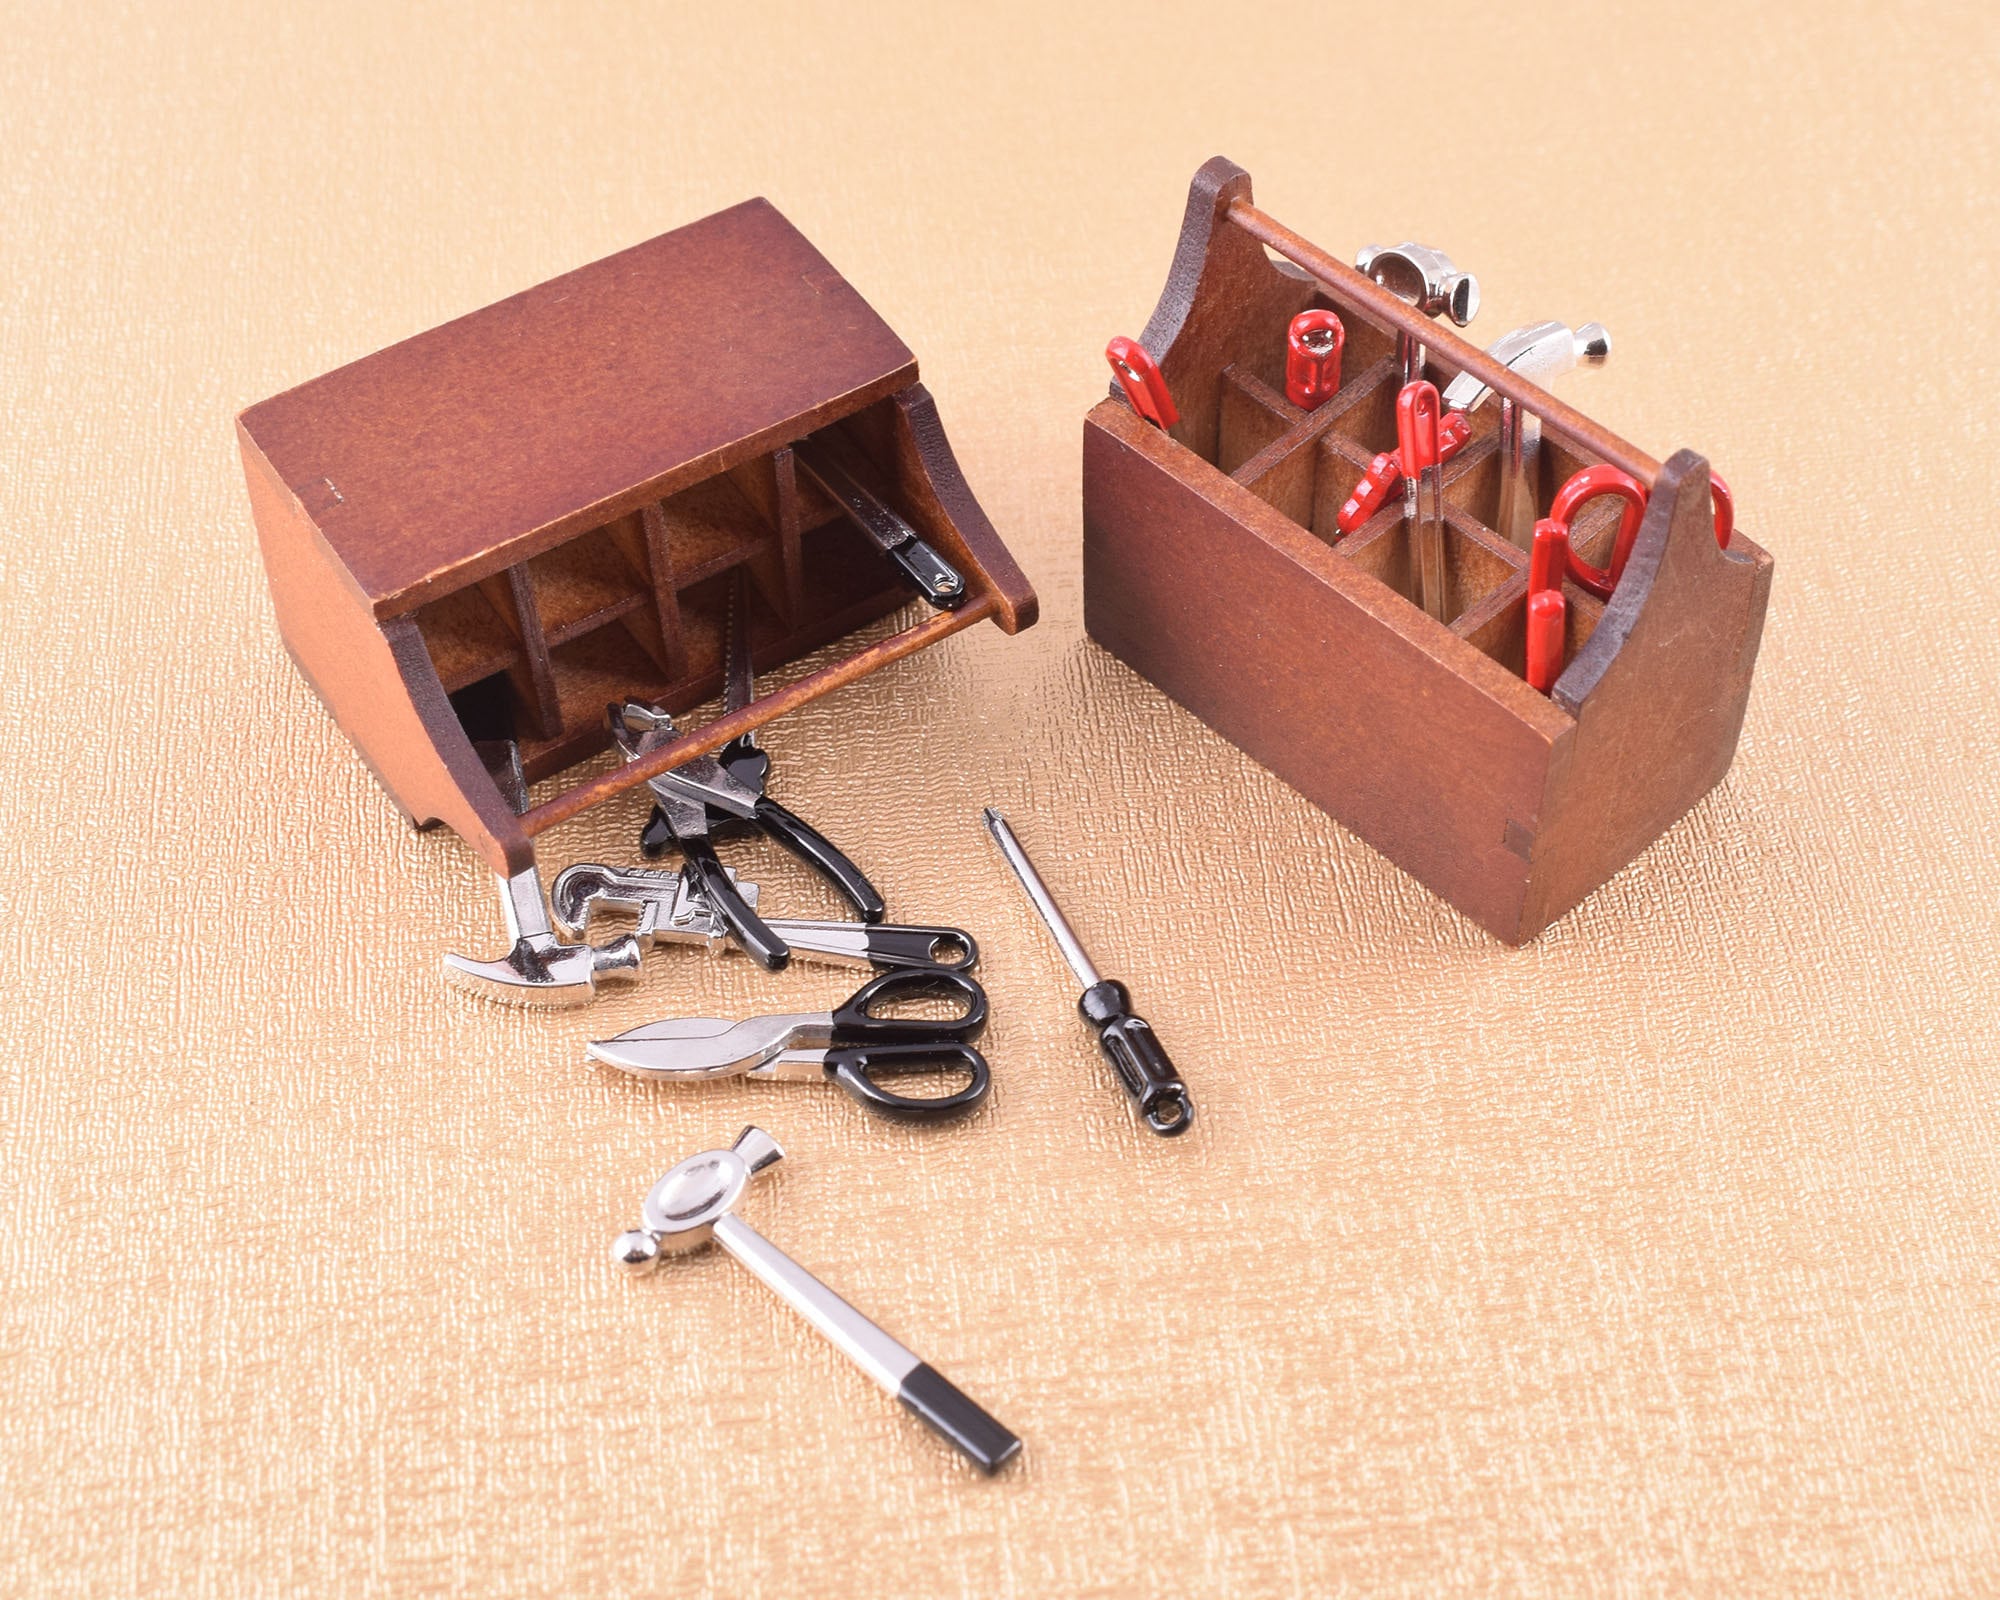 Mini kit de herramientas, modelo de herramienta, herramienta en miniatura  de casa de muñecas, negro / rojo metal llave martillo tamaño modelo, caja  de herramientas de madera, piezas juguetes pasatiempos regalo 